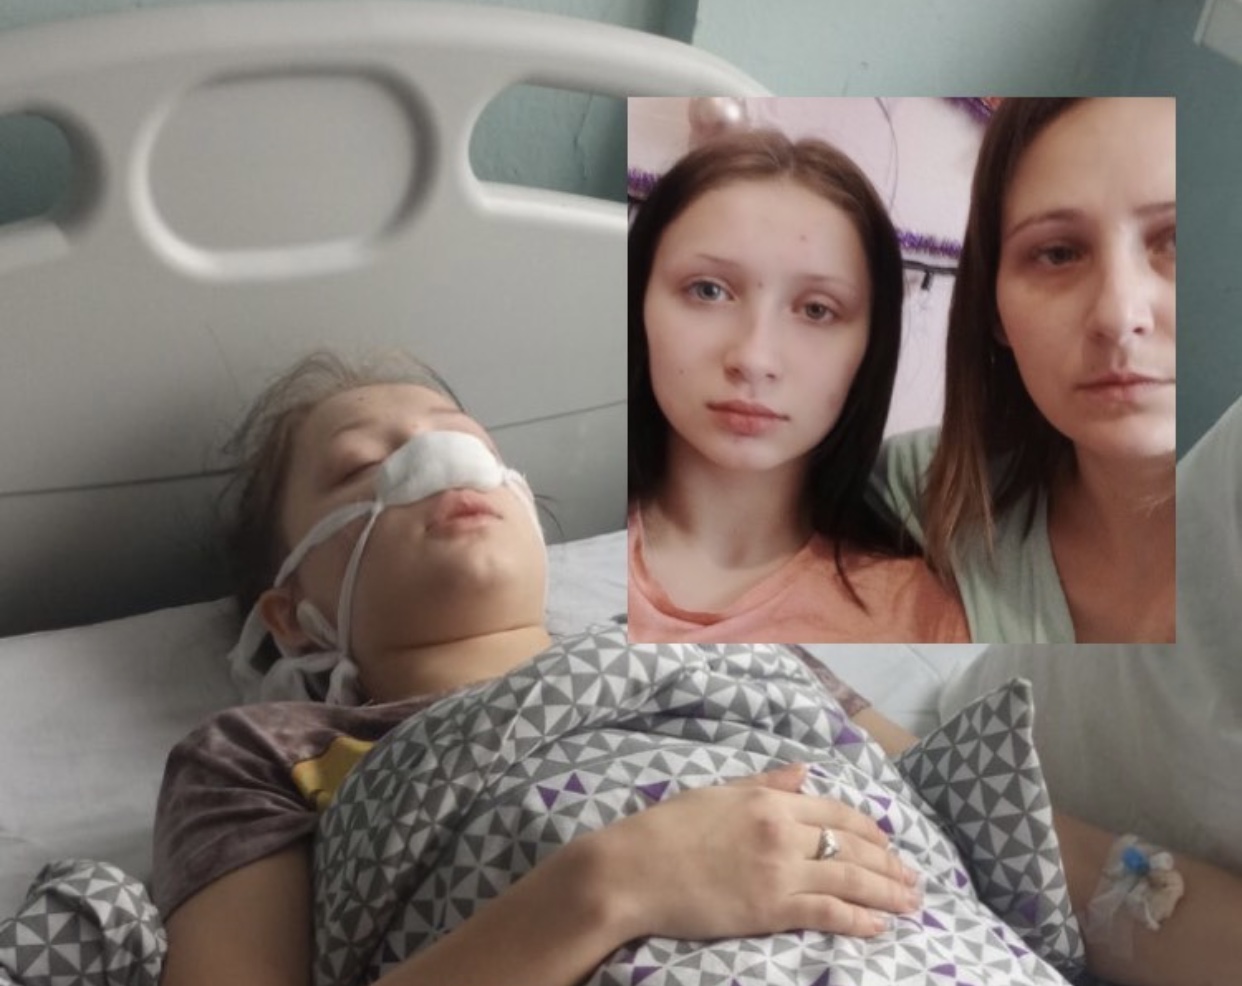 Девочке с инвалидностью, которую в Запорожье избили школьницы, сделали первую операцию (ФОТО)